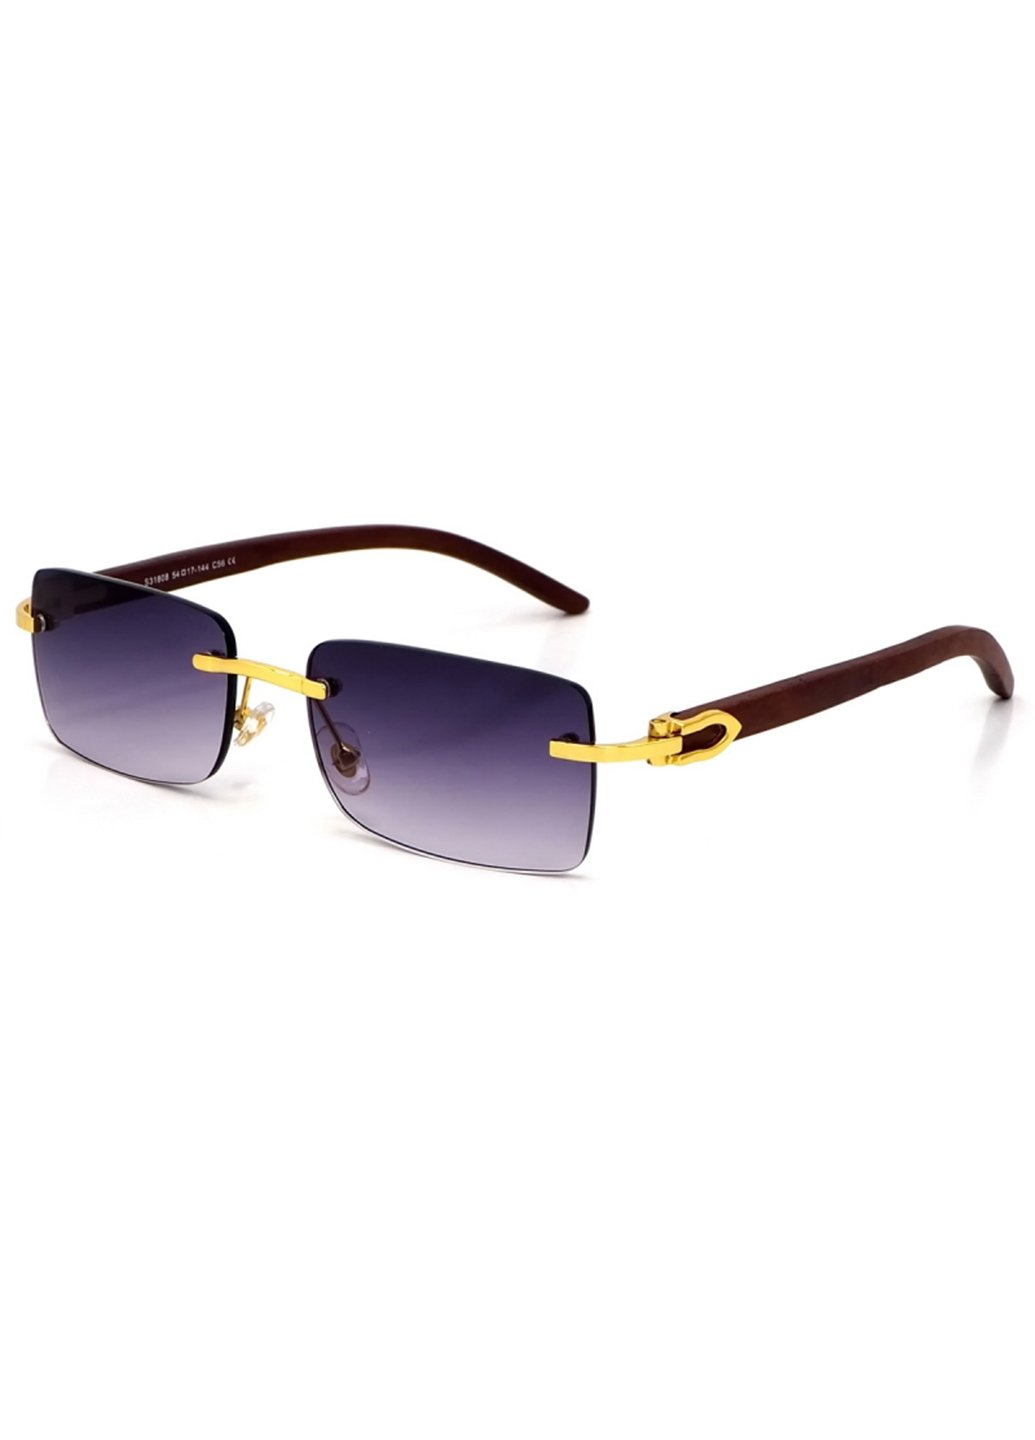 Купить Женские солнцезащитные очки Merlini с поляризацией S31808 117012 - Золотистый в интернет-магазине